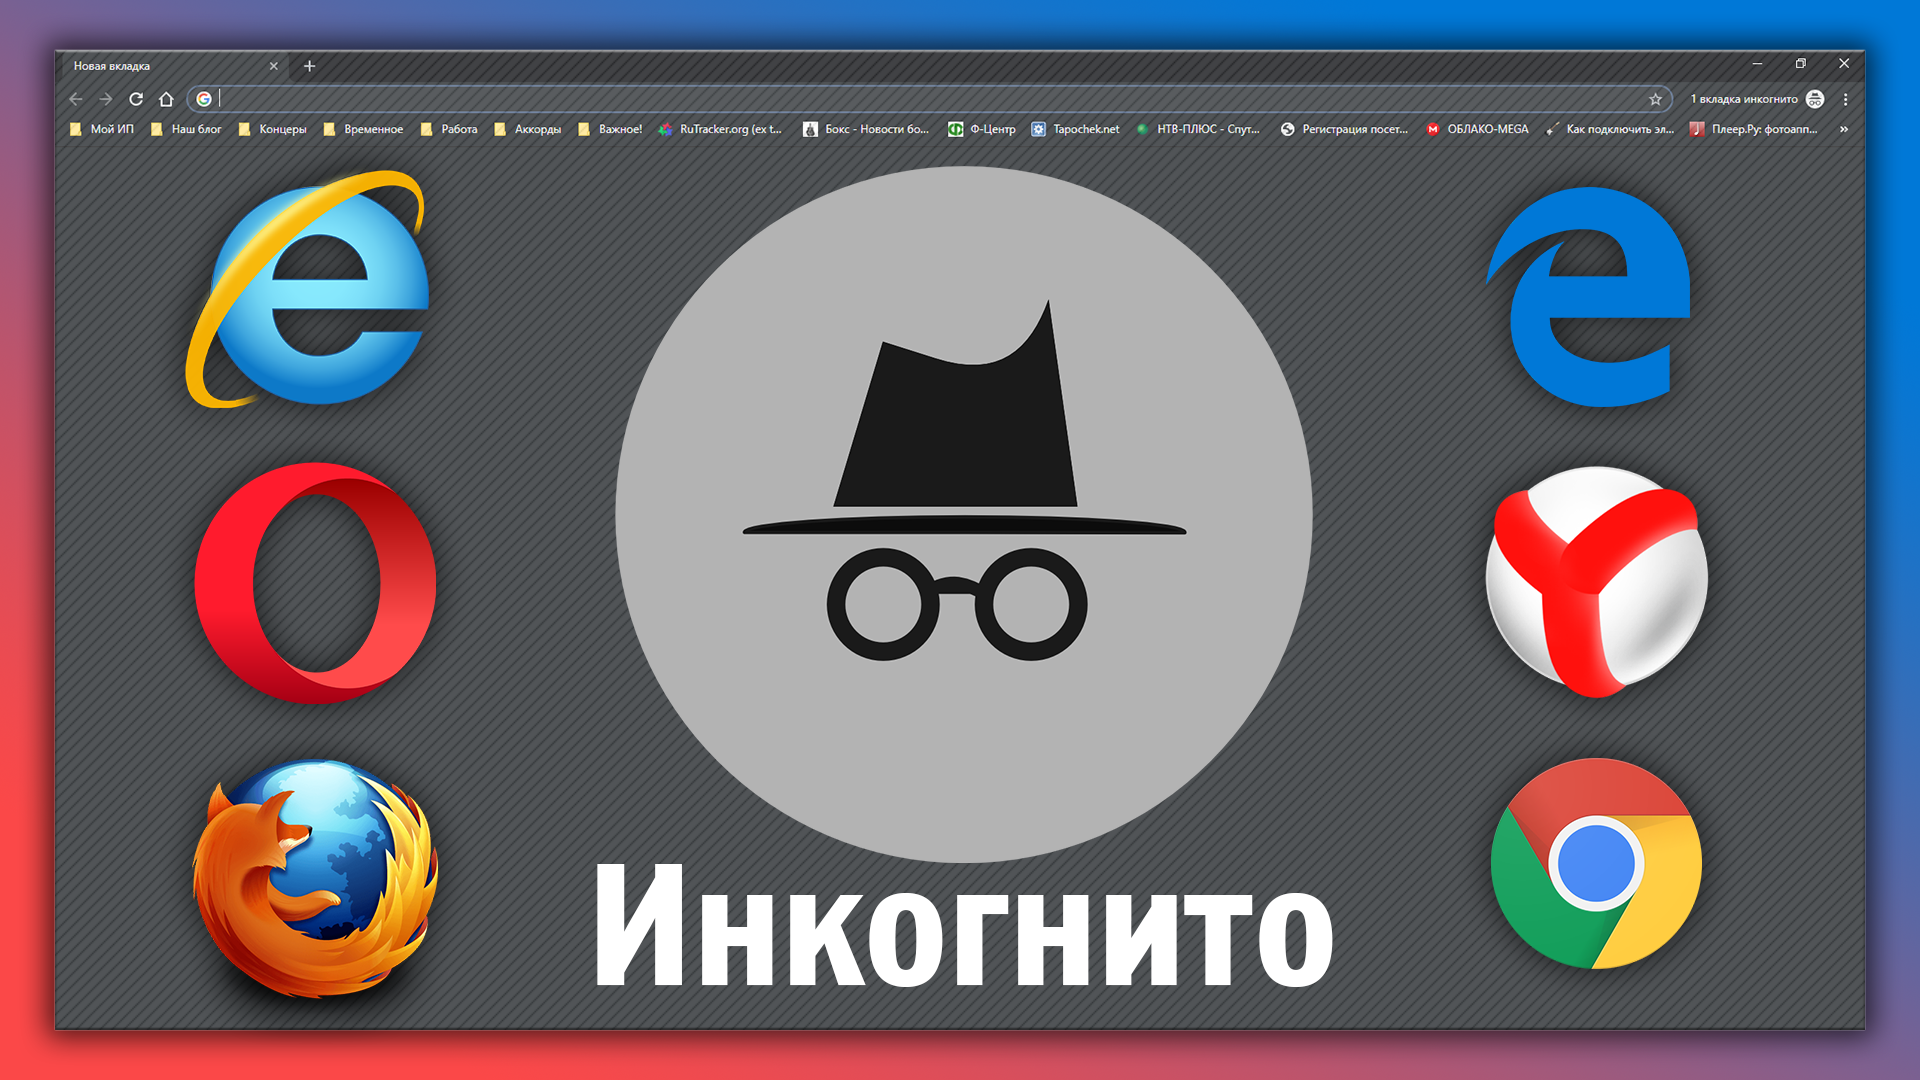 Картинка к статье - режим инкогнито в разных браузерах: иконки браузеров, на фоне "инкогнито" в Google Chrome